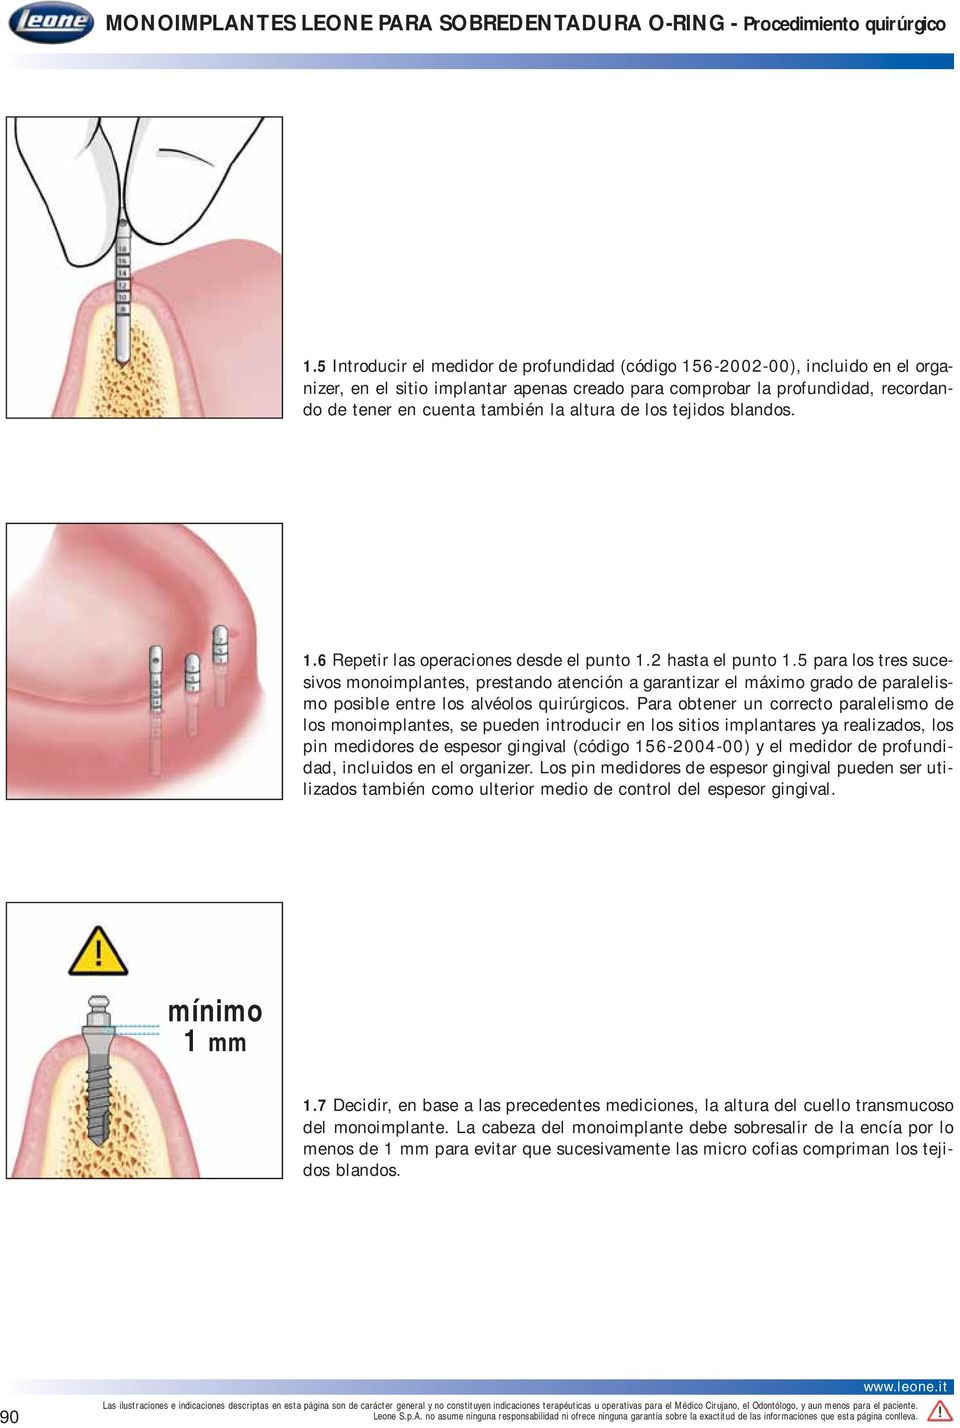 5 para los tres sucesivos monoimplantes, prestando atención a garantizar el máximo grado de paralelismo posible entre los alvéolos quirúrgicos.